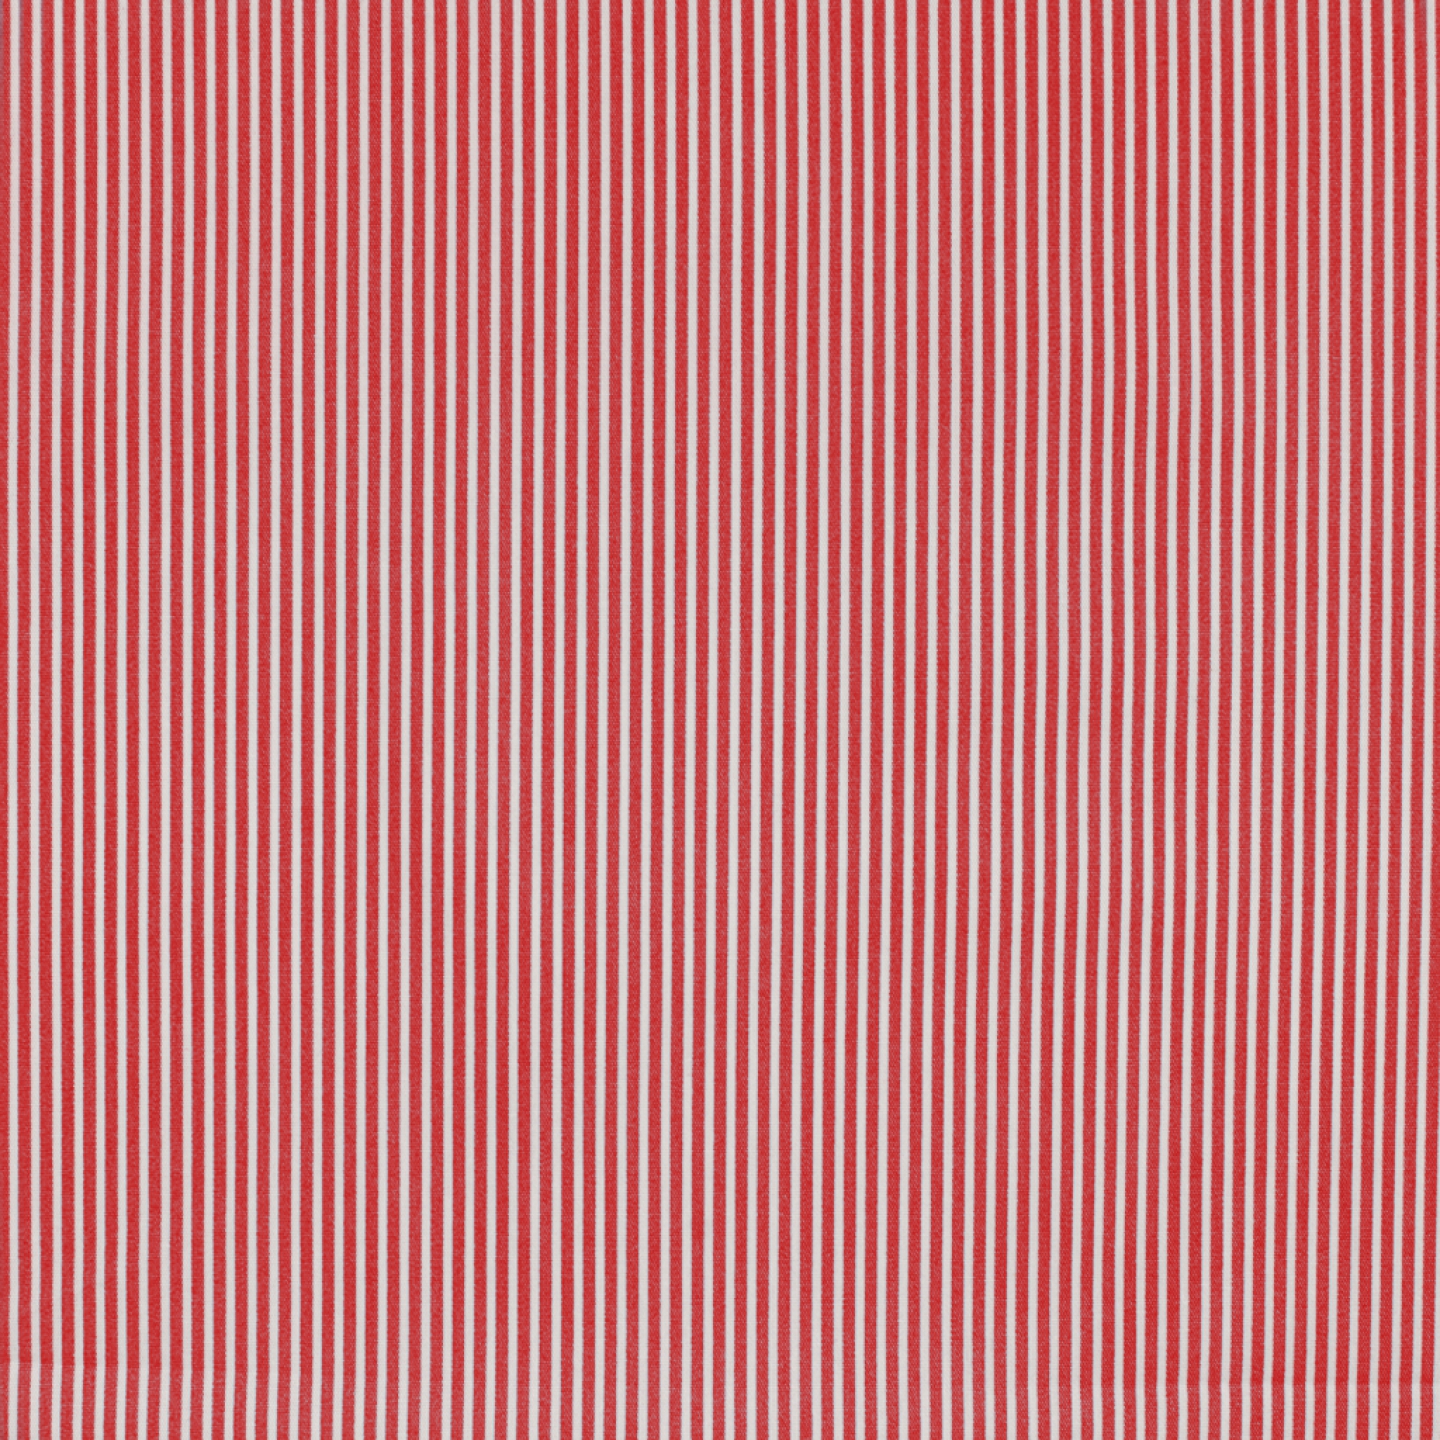 Minimals Stripe - red-white